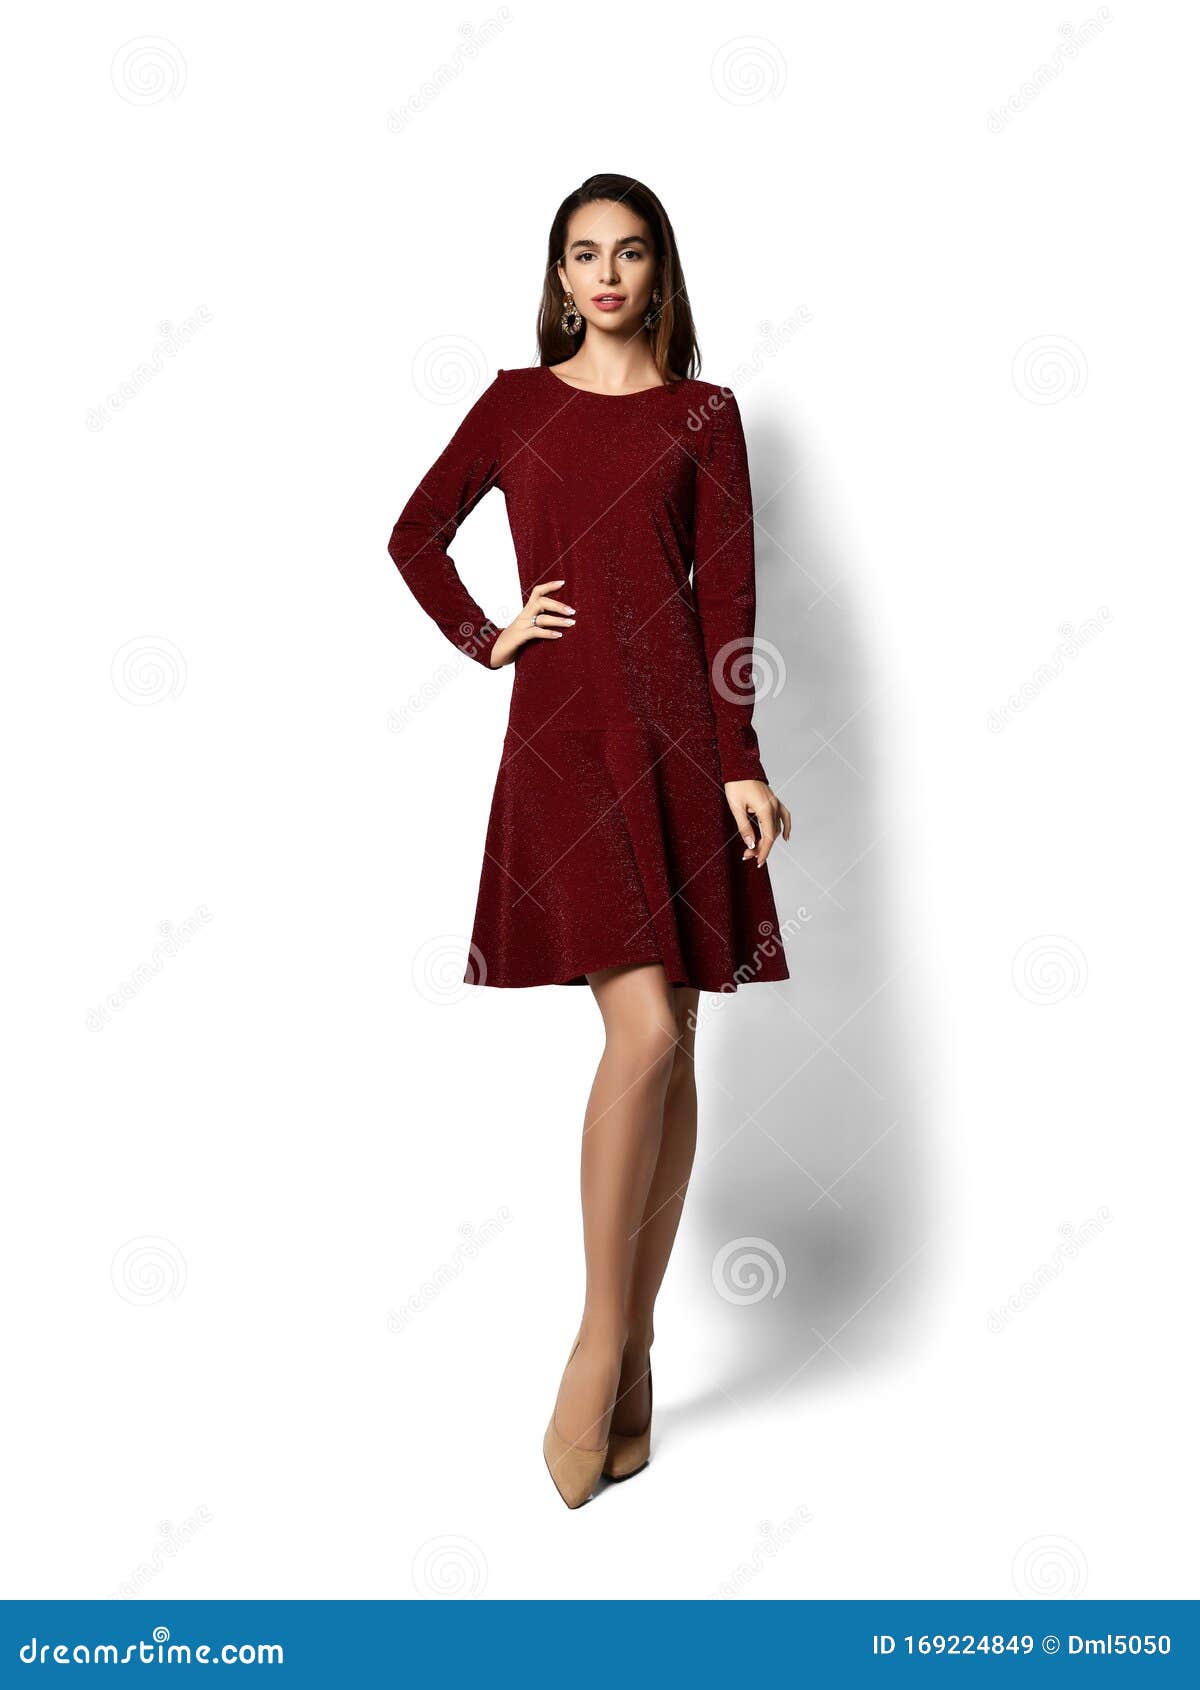 Joven Mujer Hermosa Posando En Nueva Forma Informal Oscuro Morado Vestido Rojo De Invierno Alegre Sonriendo Caminando Imagen de archivo - Imagen de modelo, atractivo: